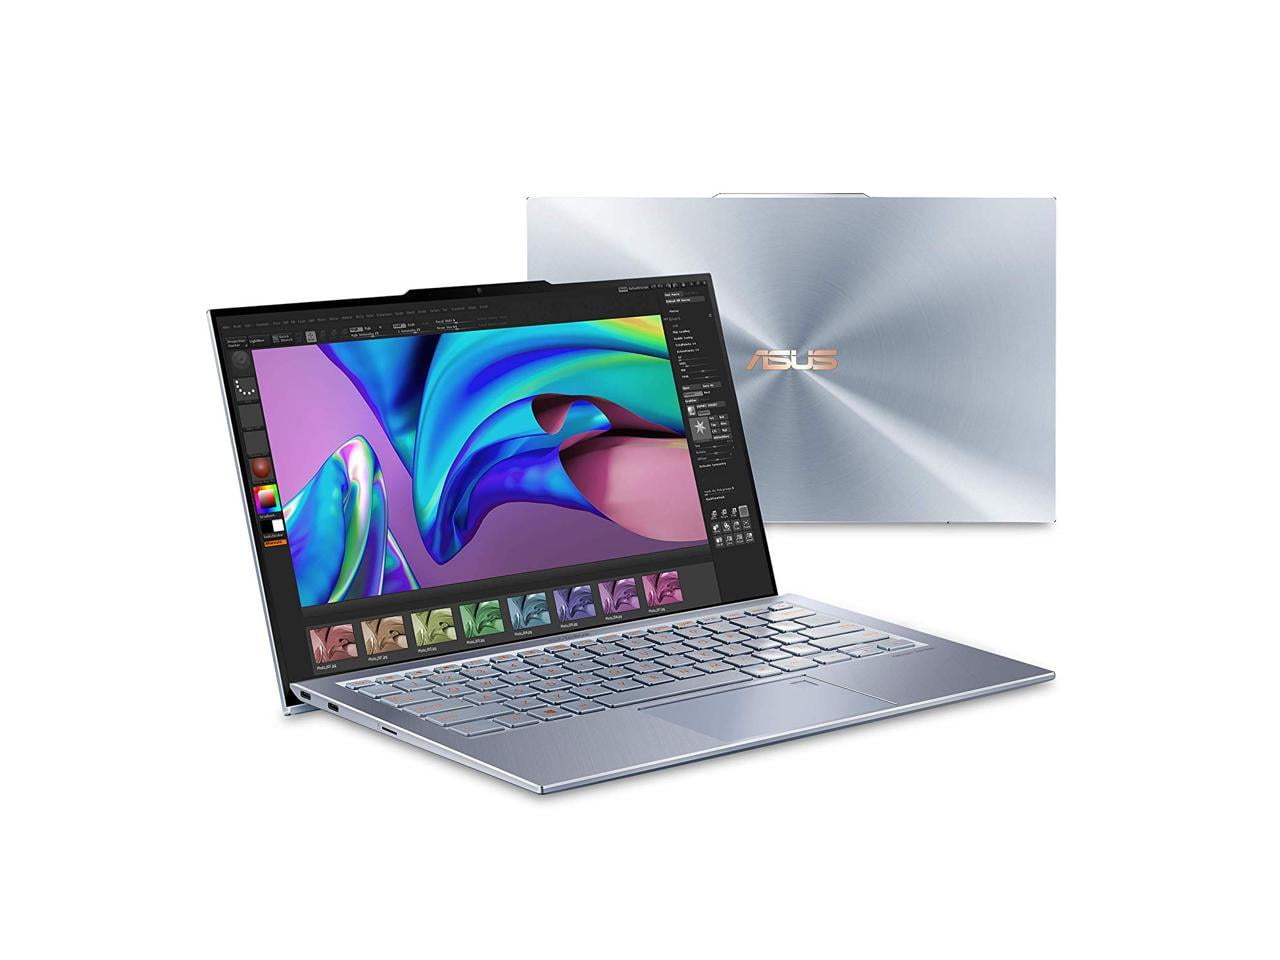 Restored ASUS ZenBook S13 UX392FN-XS77 13.9 inch Intel Core i7-8565U  1.8GHz/ 16GB LPDDR3/ 512GB SSD/ USB3.1/ Windows 10 Pro (Refurbished)